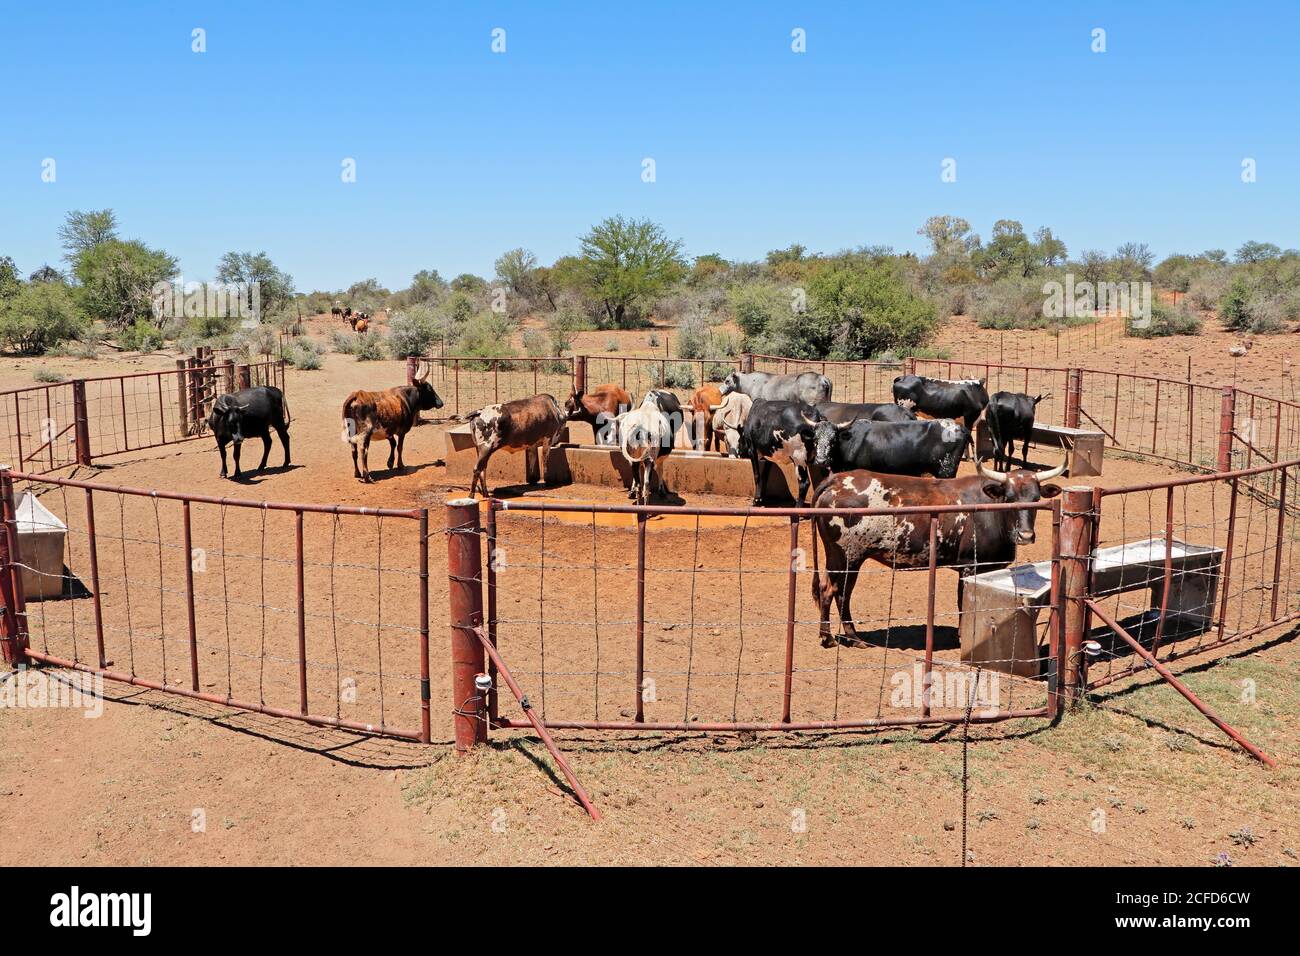 Élevage de bétail nguni en liberté, qui se rassemble à un point d'eau dans une ferme rurale, en Afrique du Sud Banque D'Images